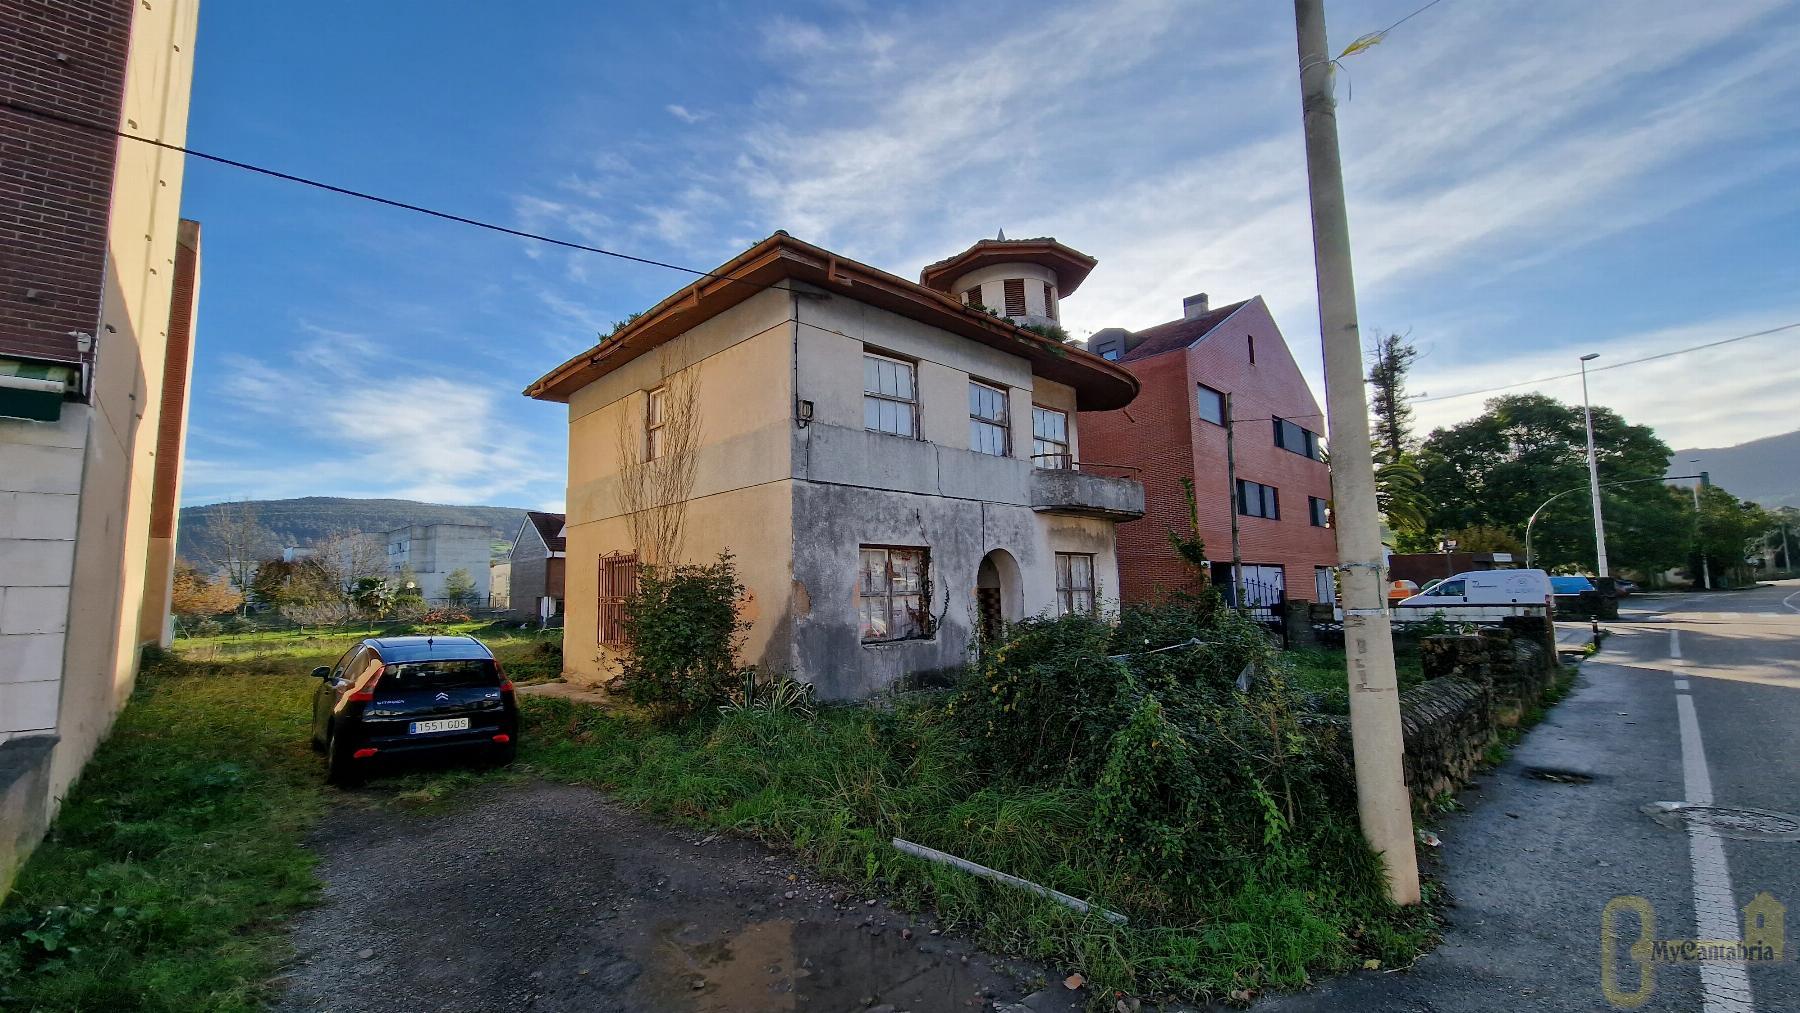 For sale of house in Santa María de Cayón